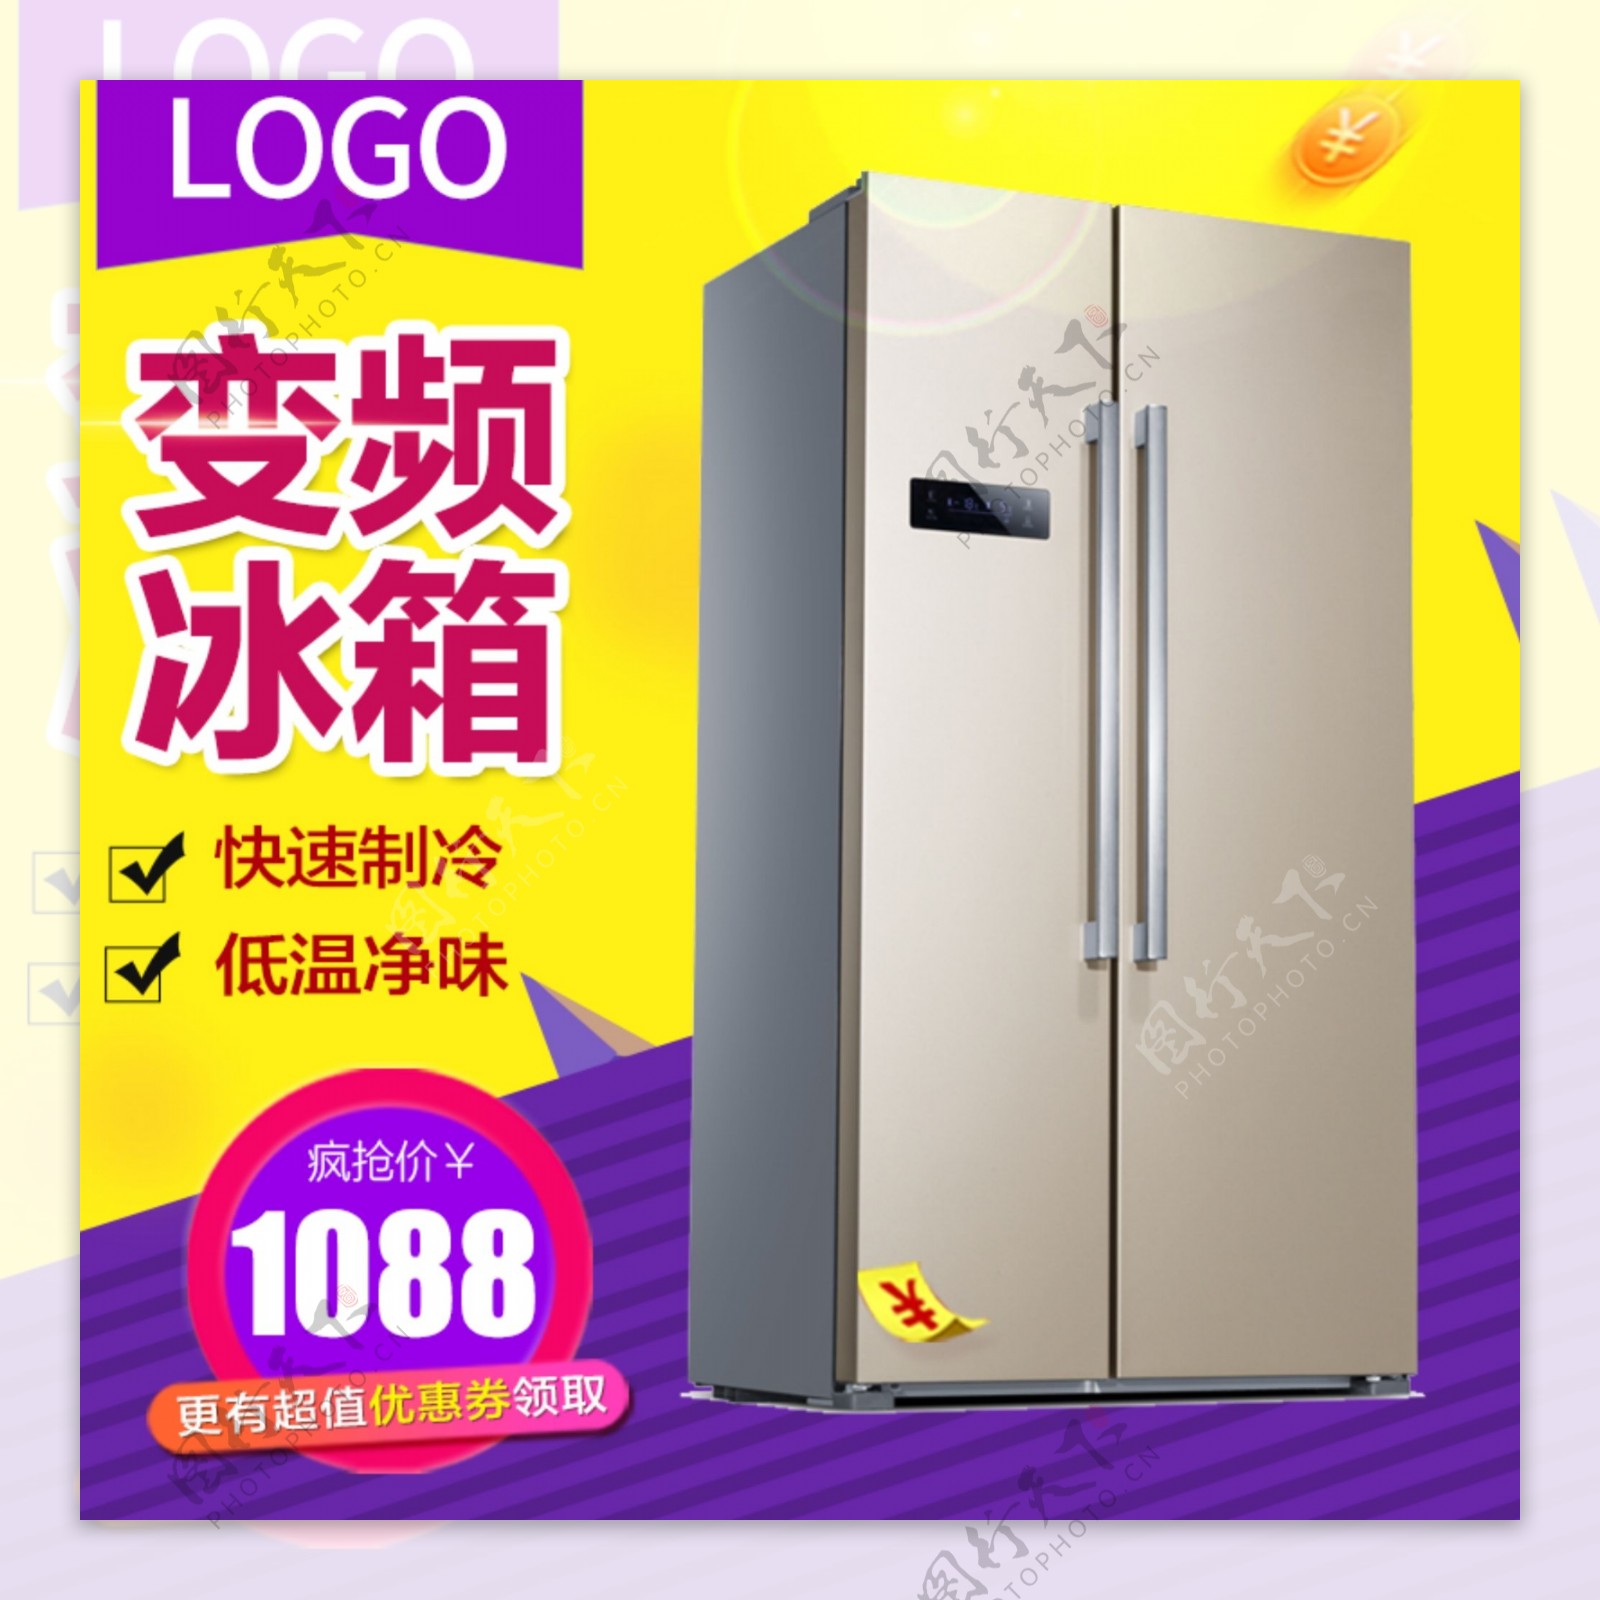 电器主图双门冰箱黄紫撞色风制冷保鲜